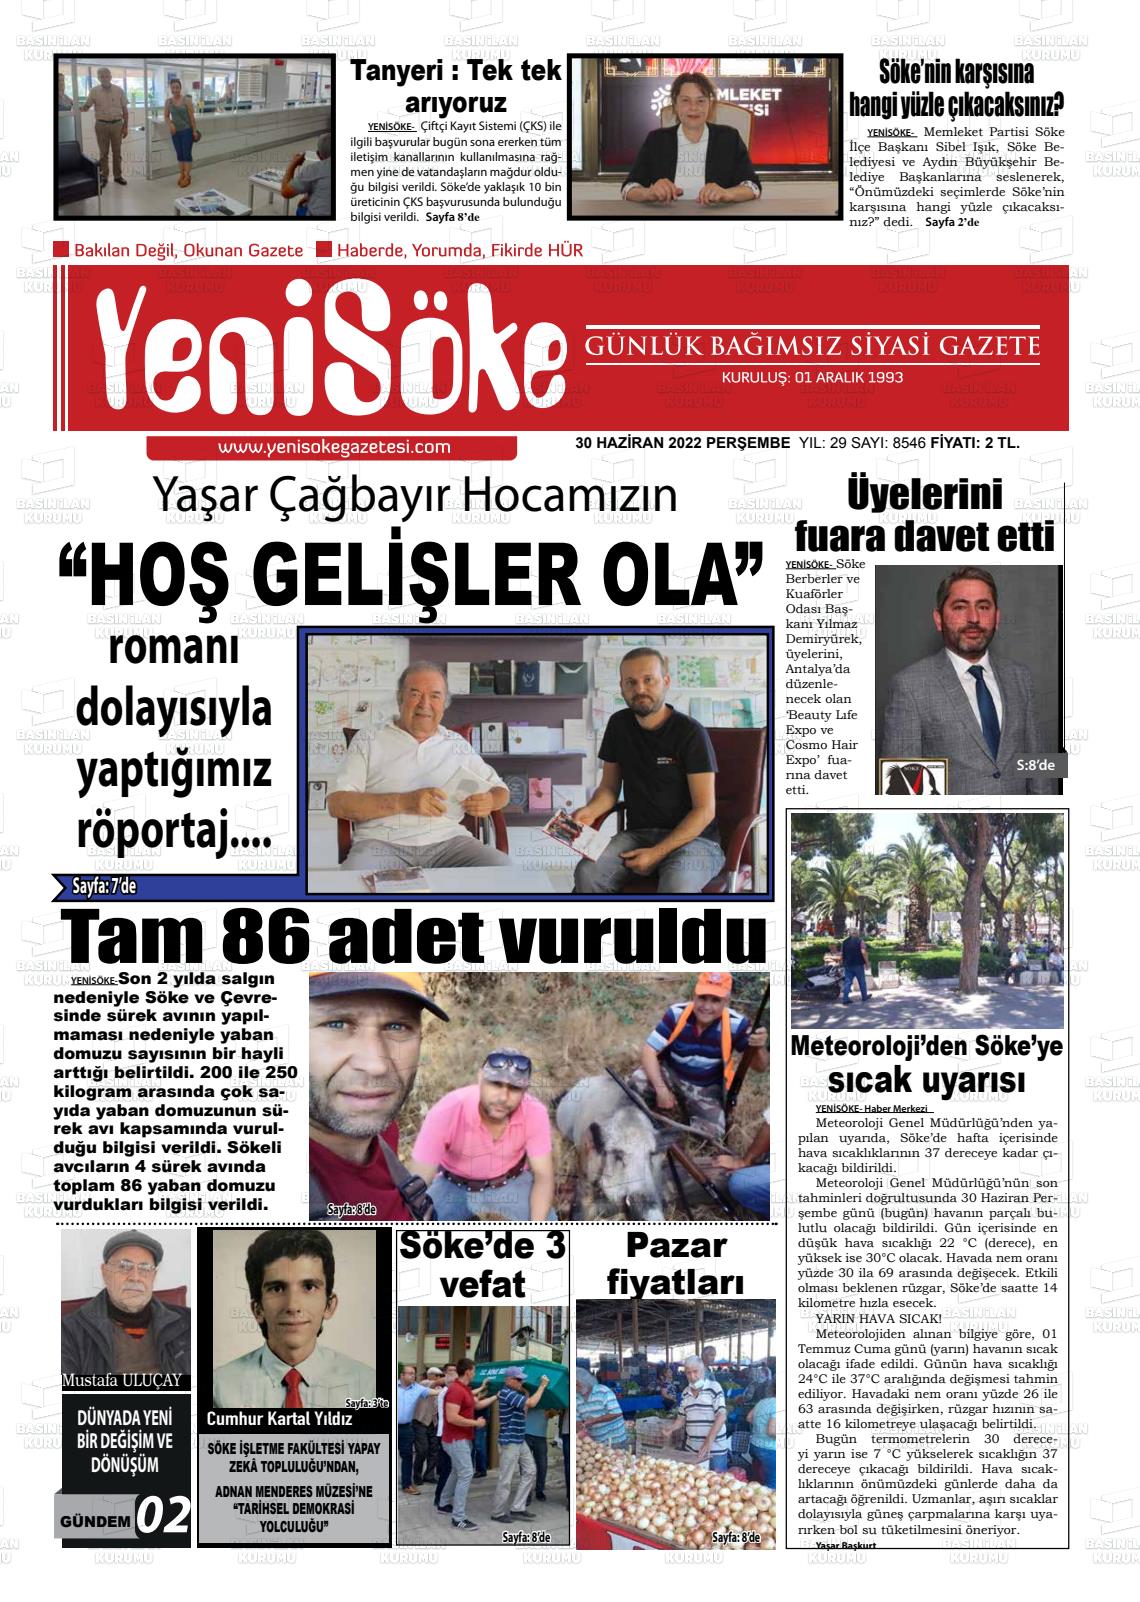 30 Haziran 2022 Yeni Söke Gazete Manşeti